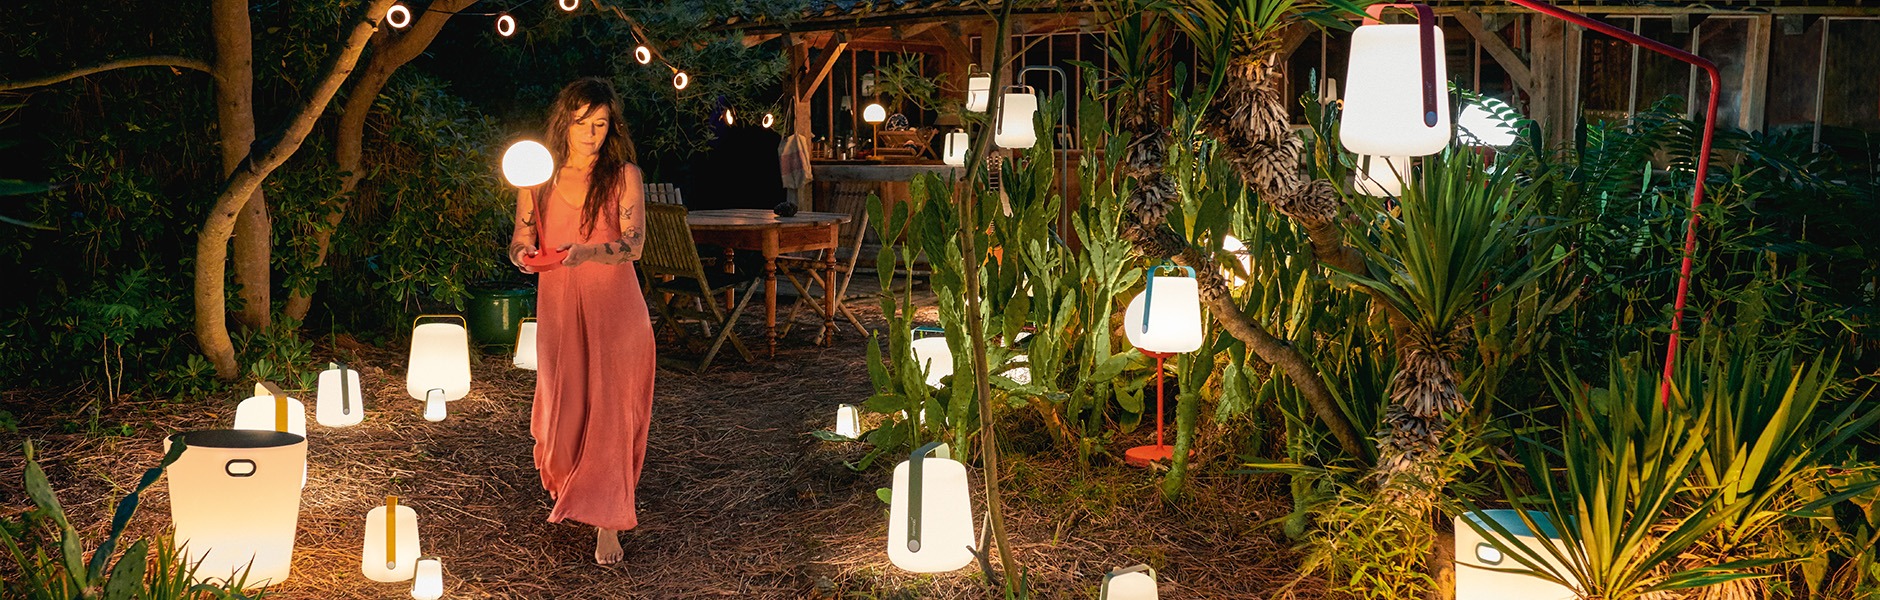 Stimmungsvolle Gartenbeleuchtung – die jede perfekte Leuchte Situation für